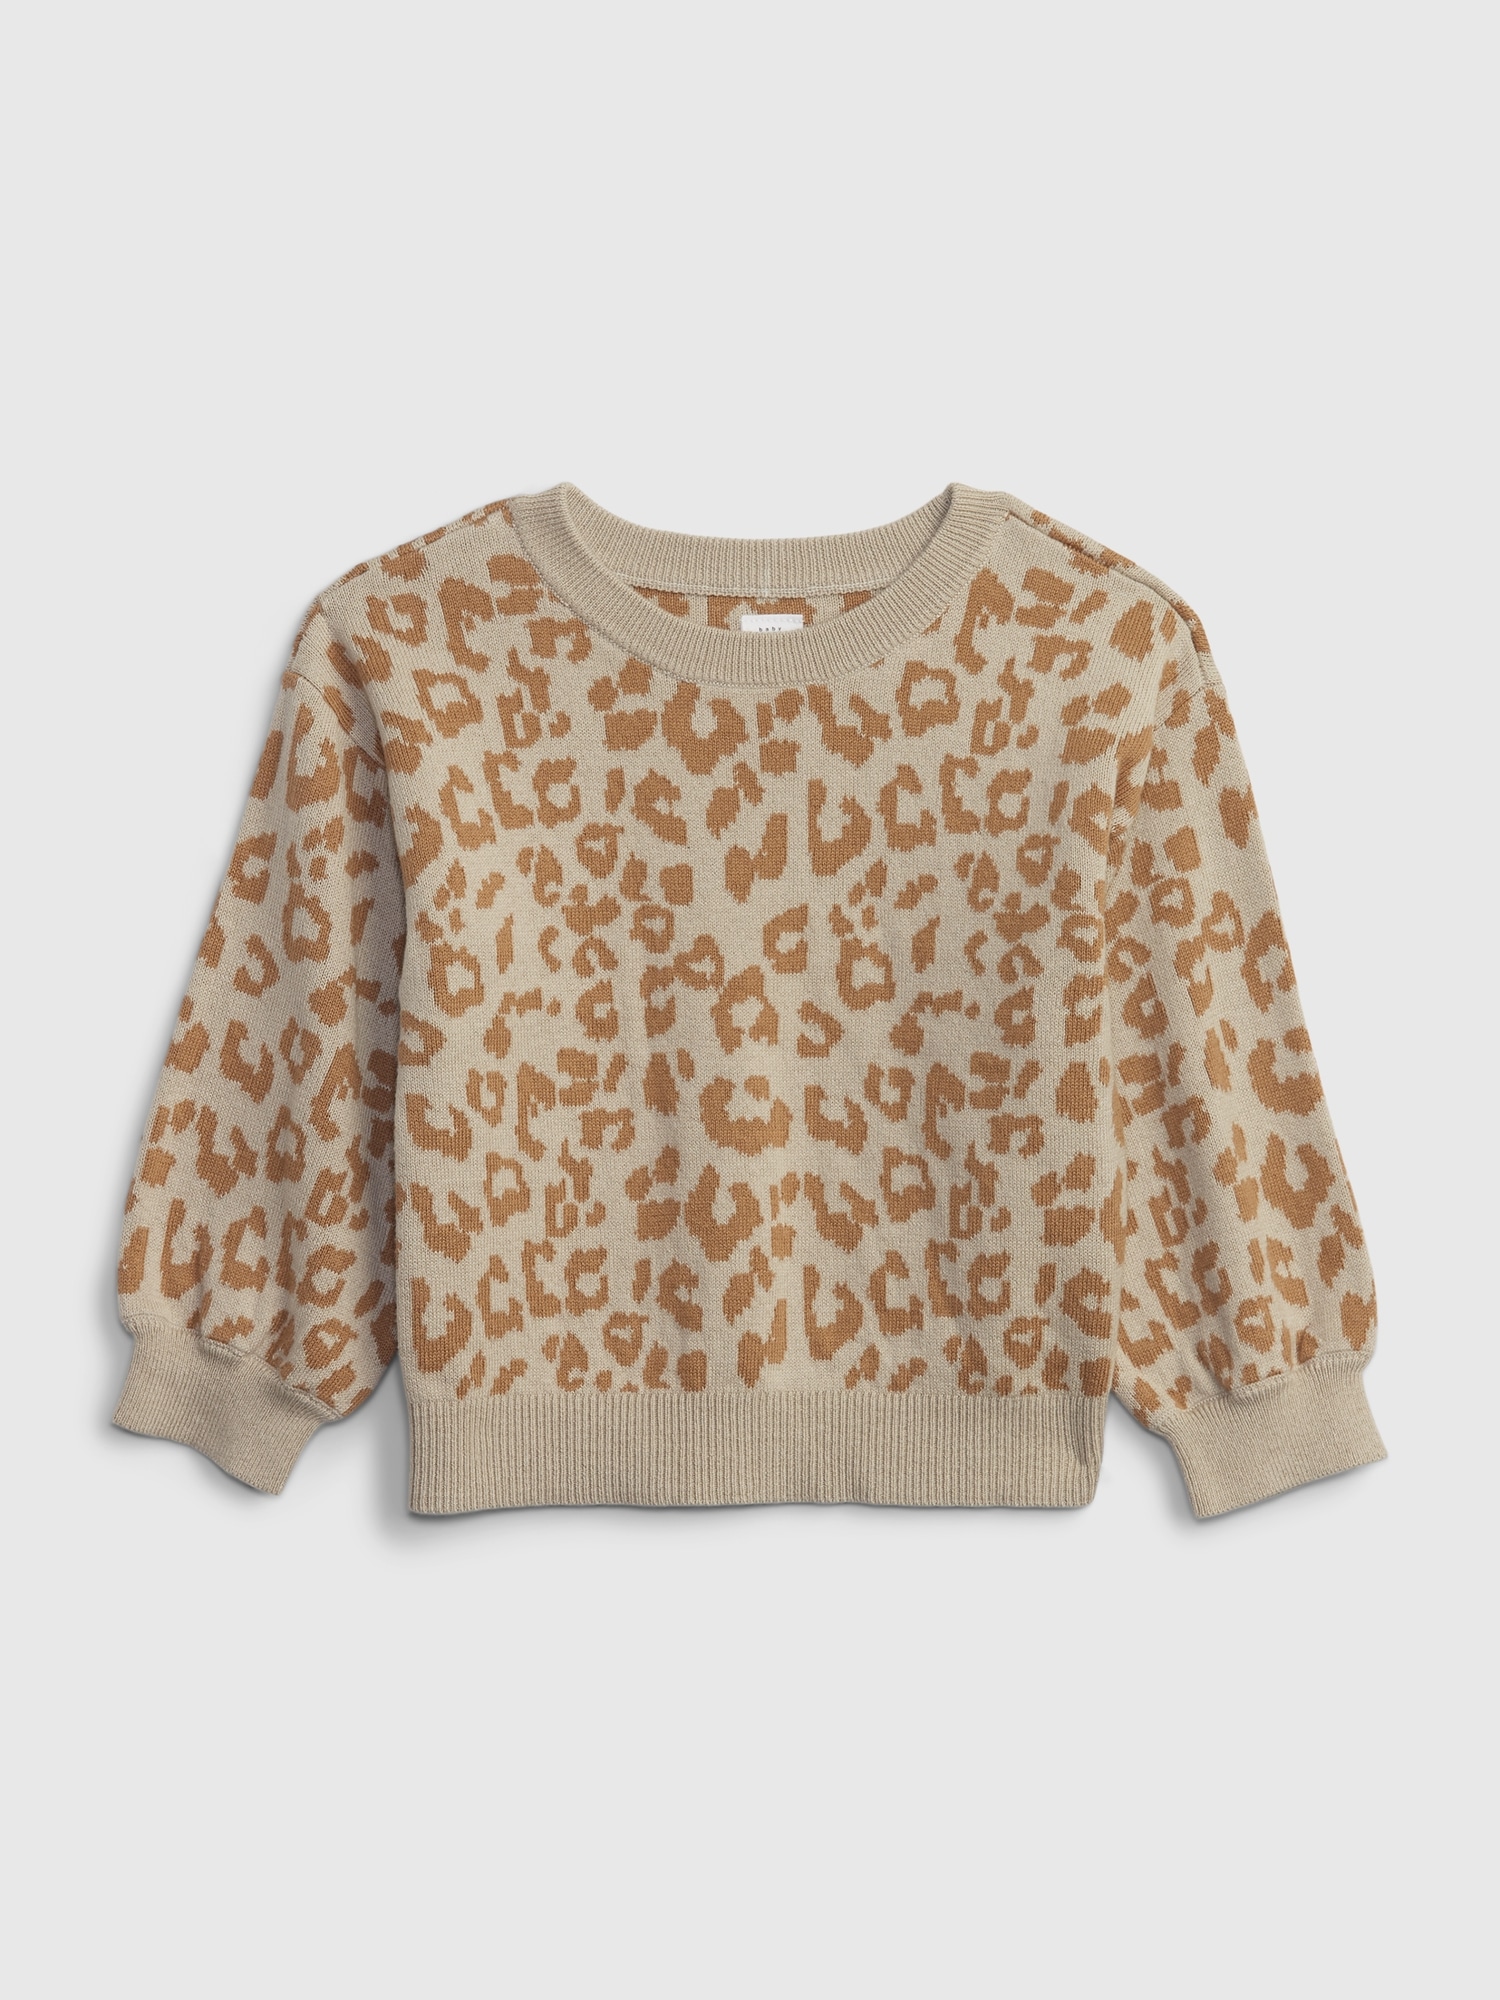 Gap Toddler Printed Sweater